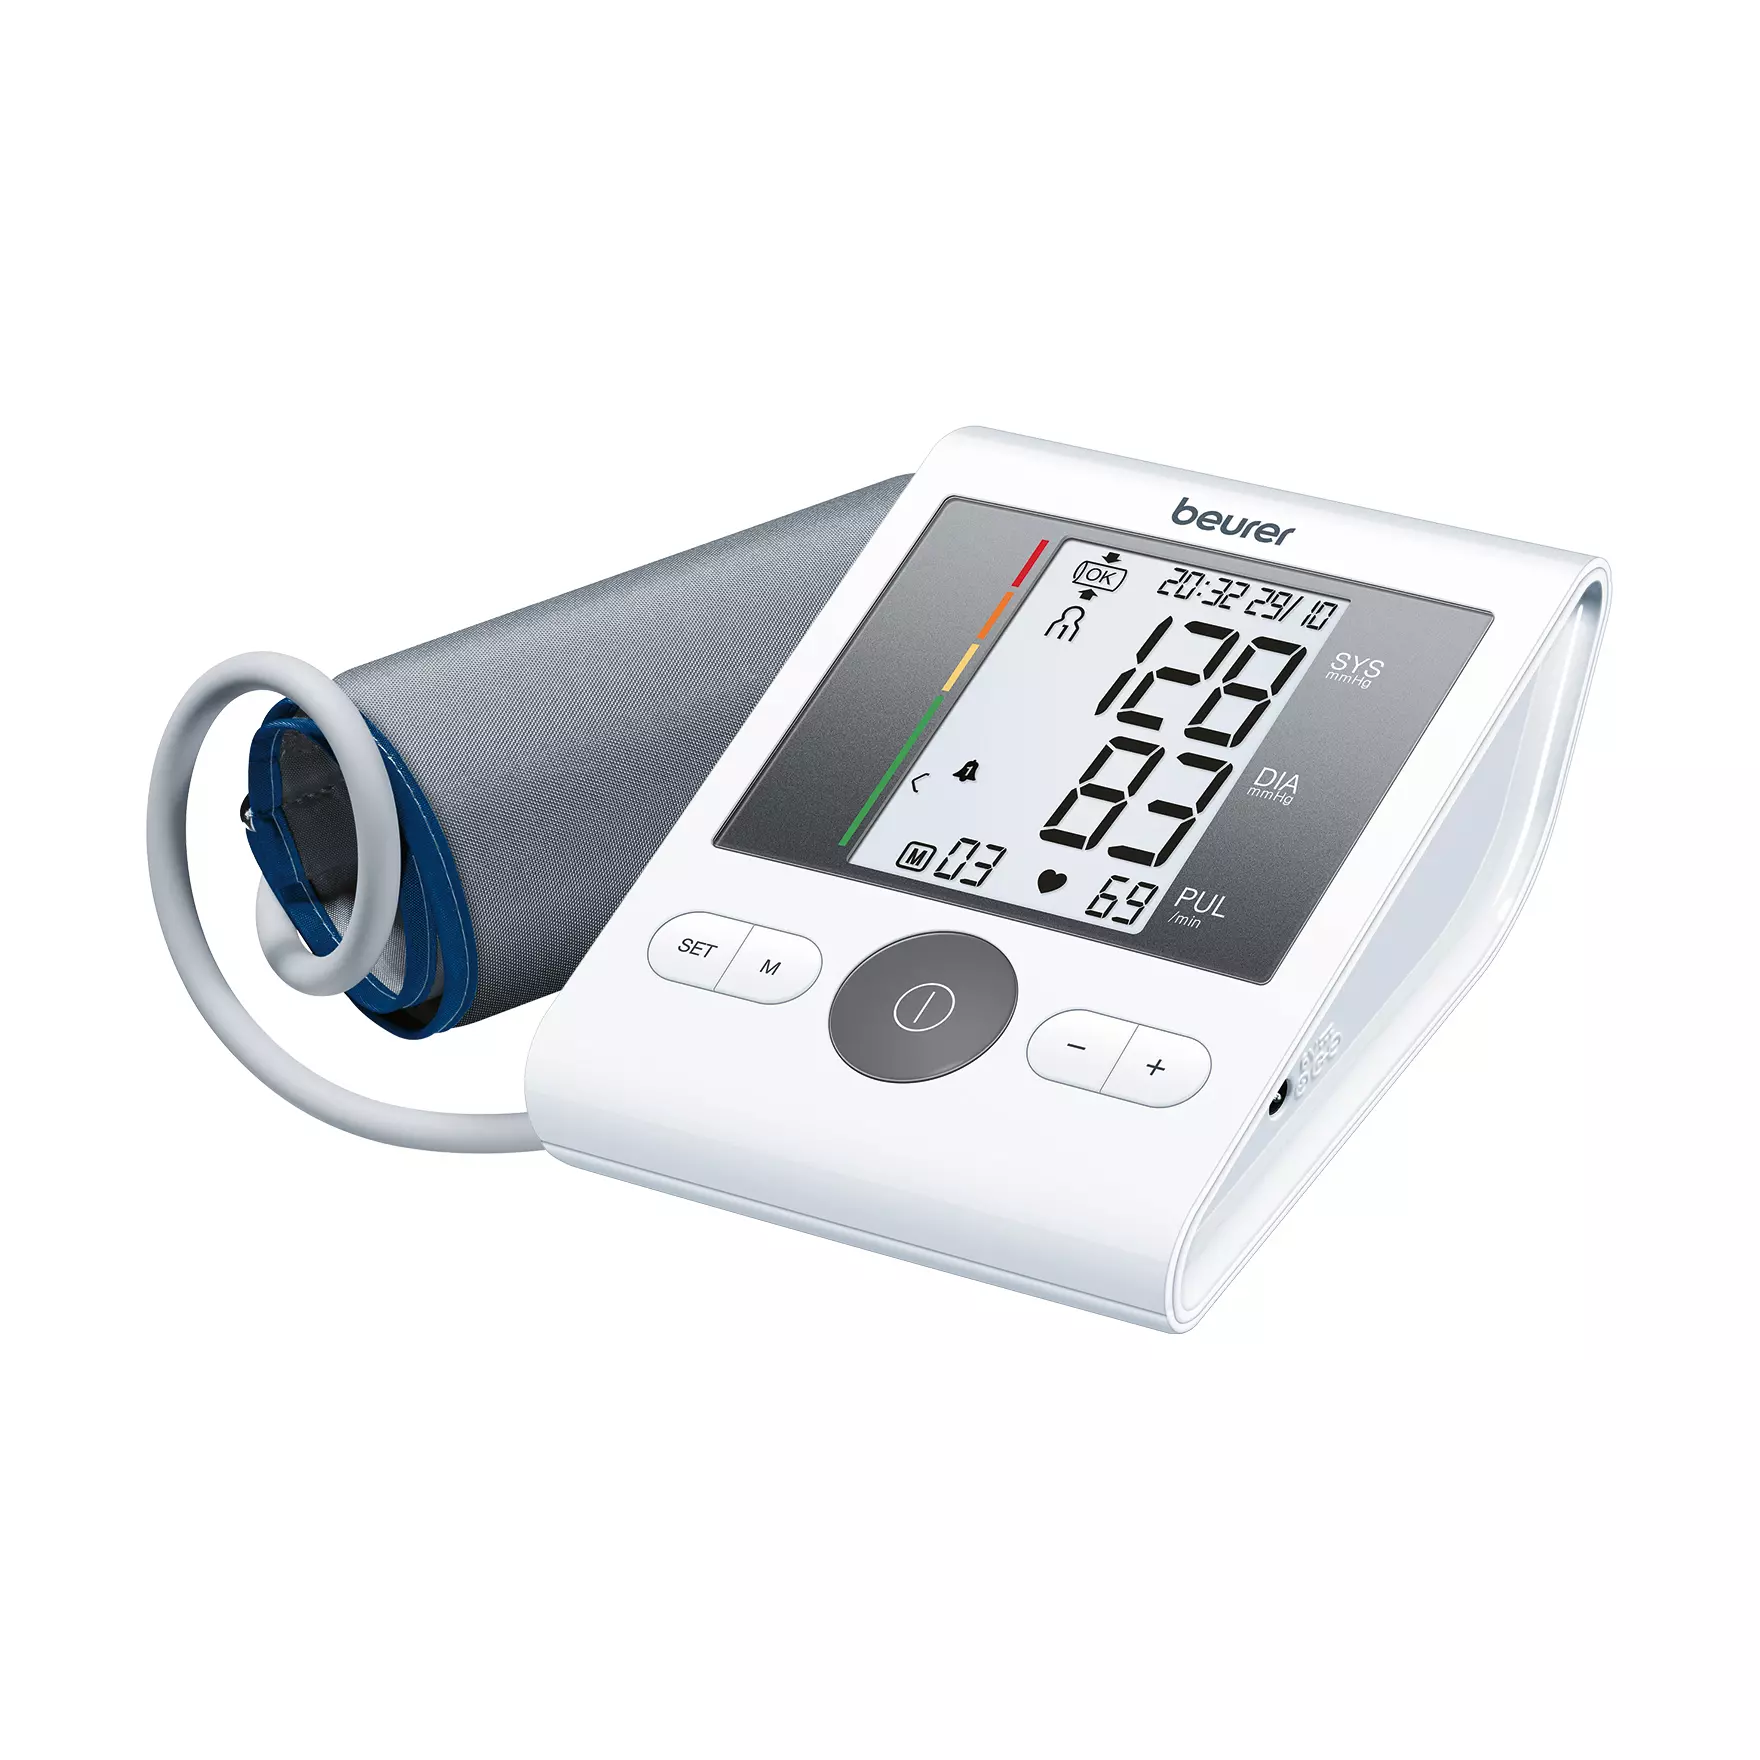 Oberarm-Blutdruckmessgerät Beurer BM 28